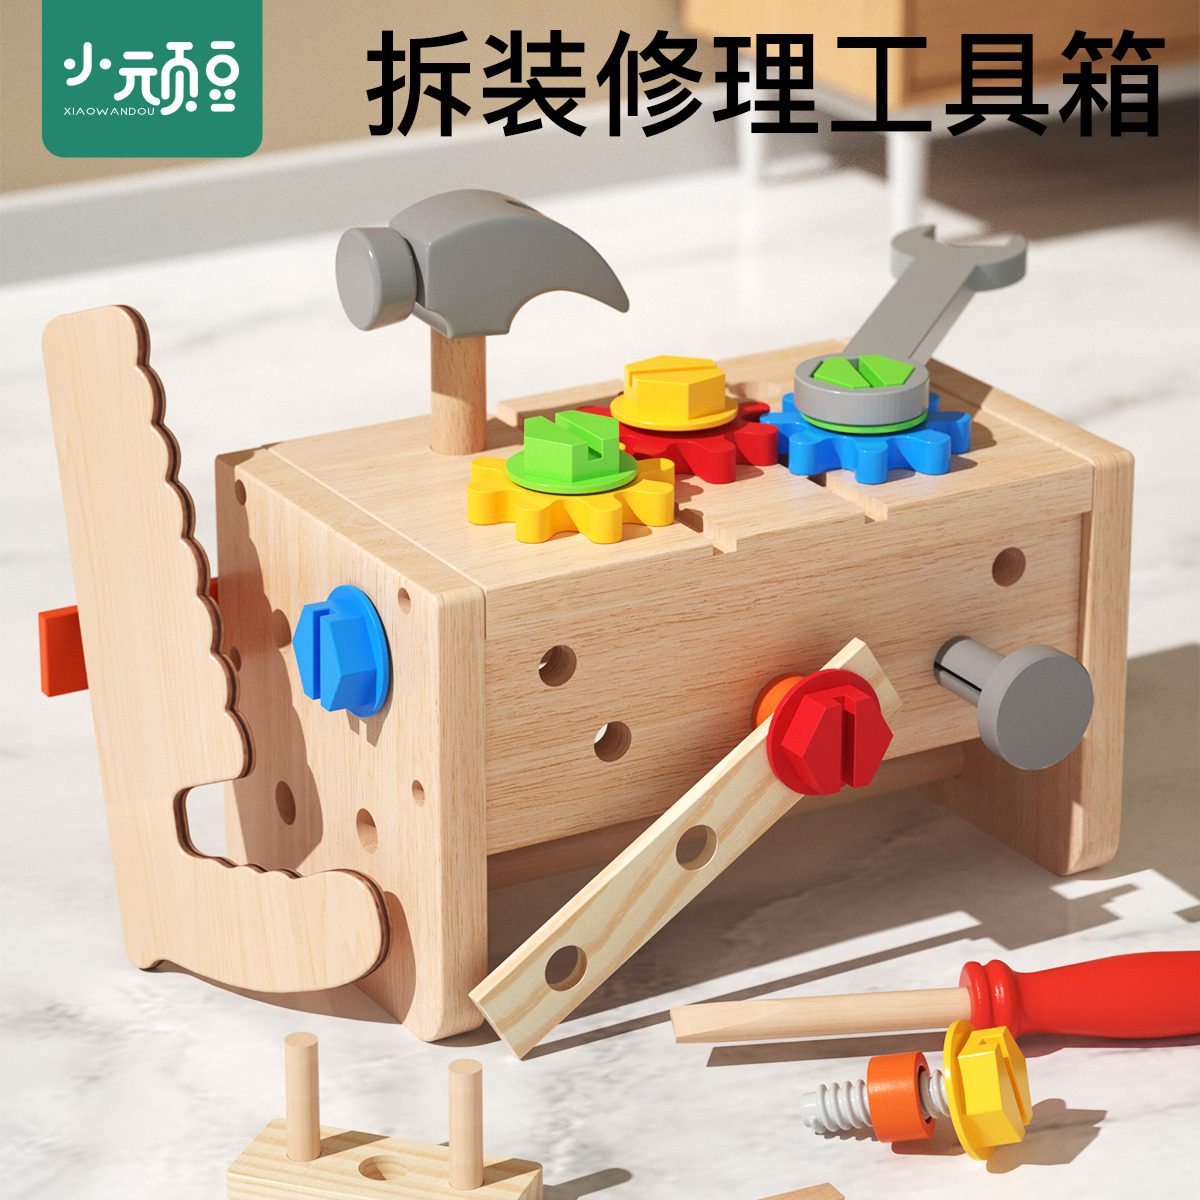 儿童仿真修理工具箱拧螺丝钉组装拆装工程车宝宝动手能力益智玩具